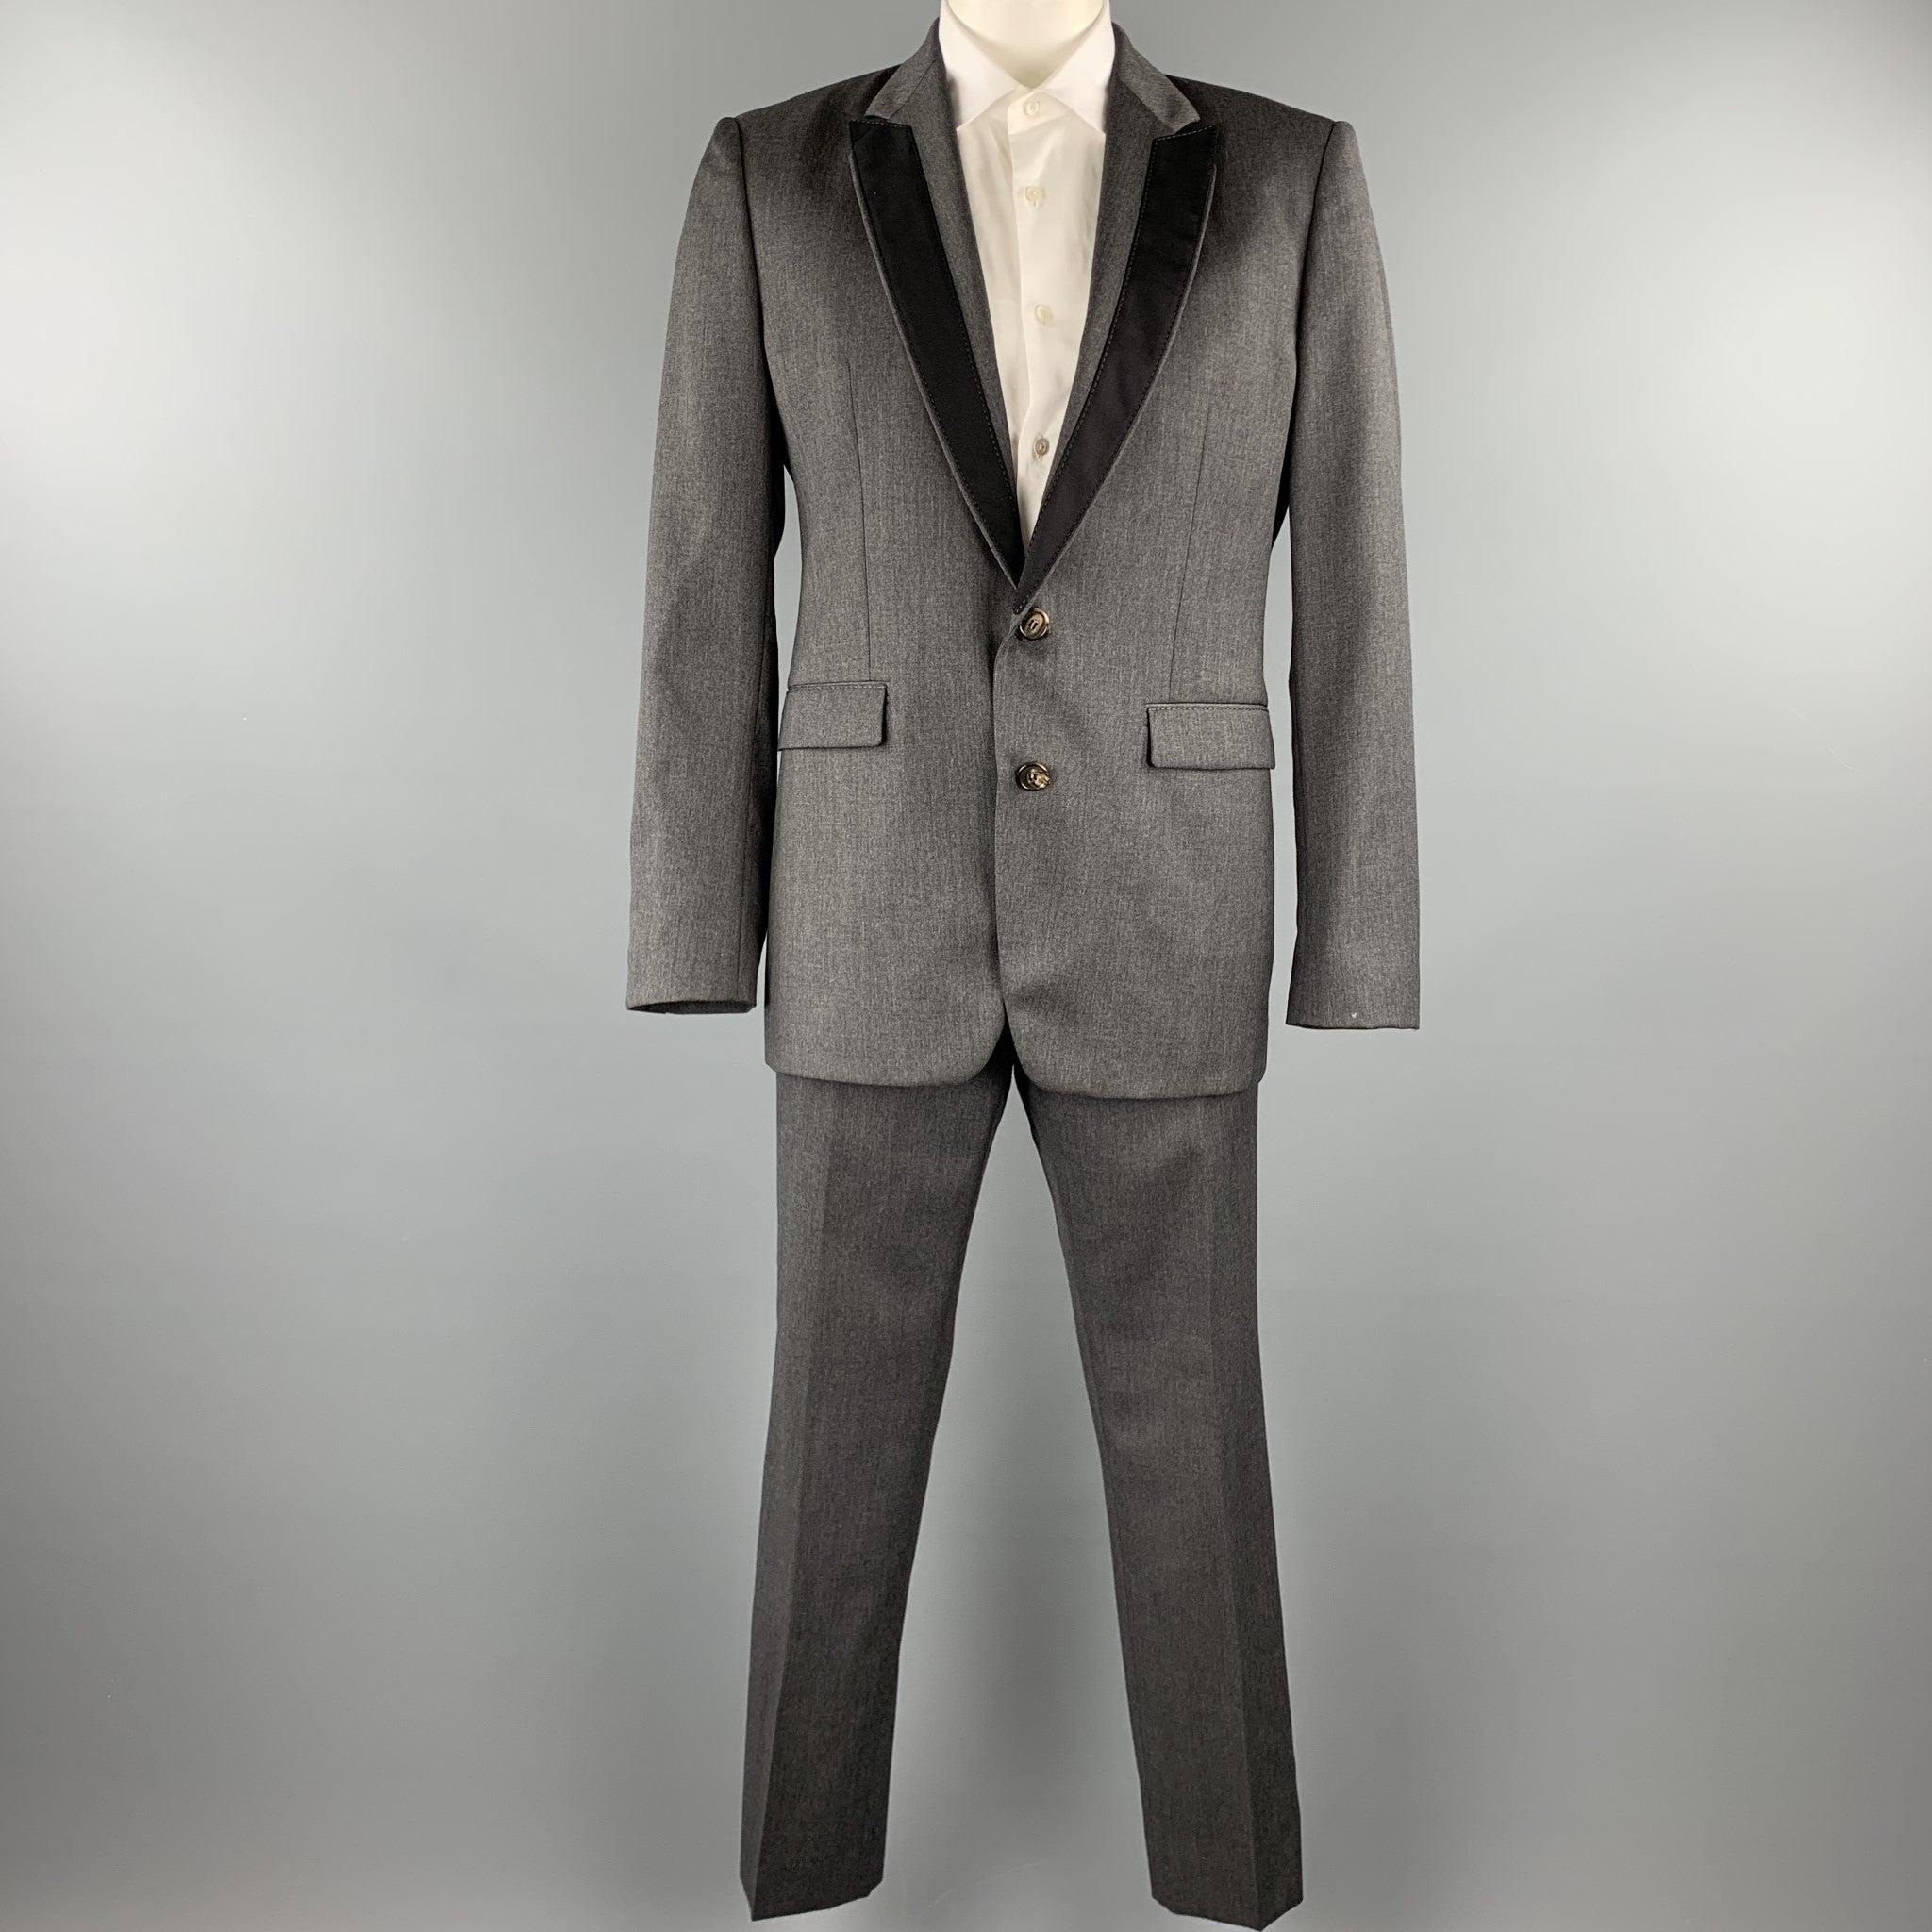 Der Anzug von VIKTOR & ROLF ist aus dunkelgrauer Wolle und besteht aus einem einreihigen, zweiknöpfigen Sportmantel mit Revers und schwarzer Zierleiste sowie einer passenden Vorderhose. Made in Italy Ausgezeichneter Pre-Owned Zustand. 

Markiert:  